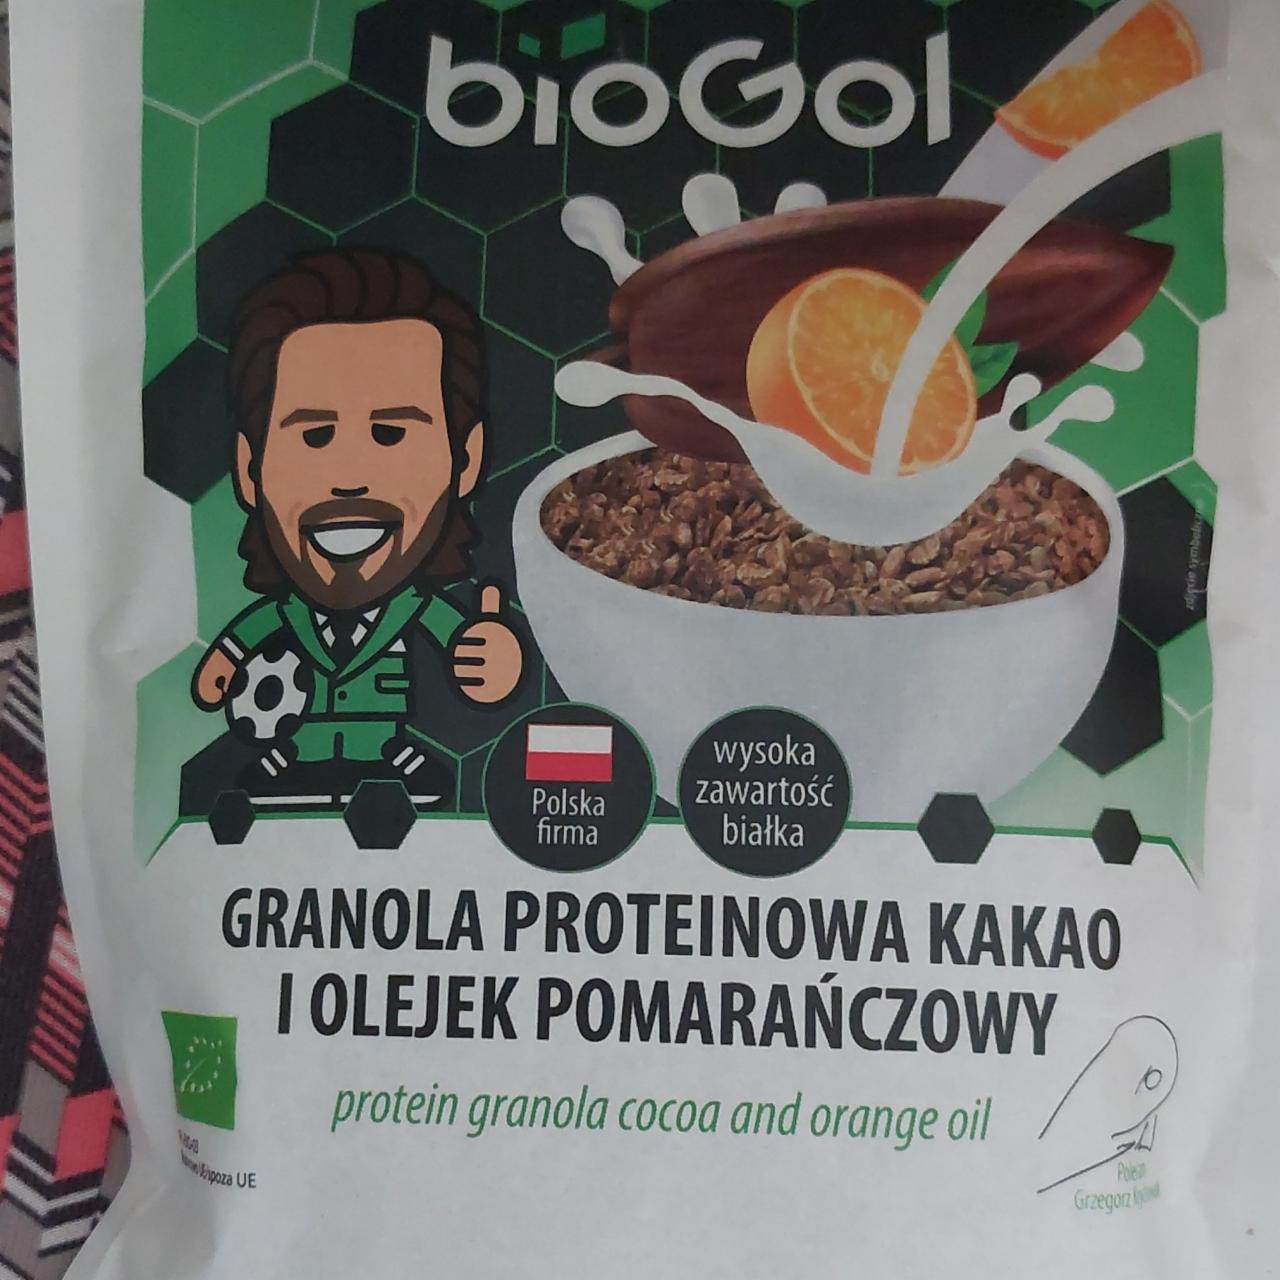 Zdjęcia - Granola proteinowa kakao i olejek pomarańczowy BioGol